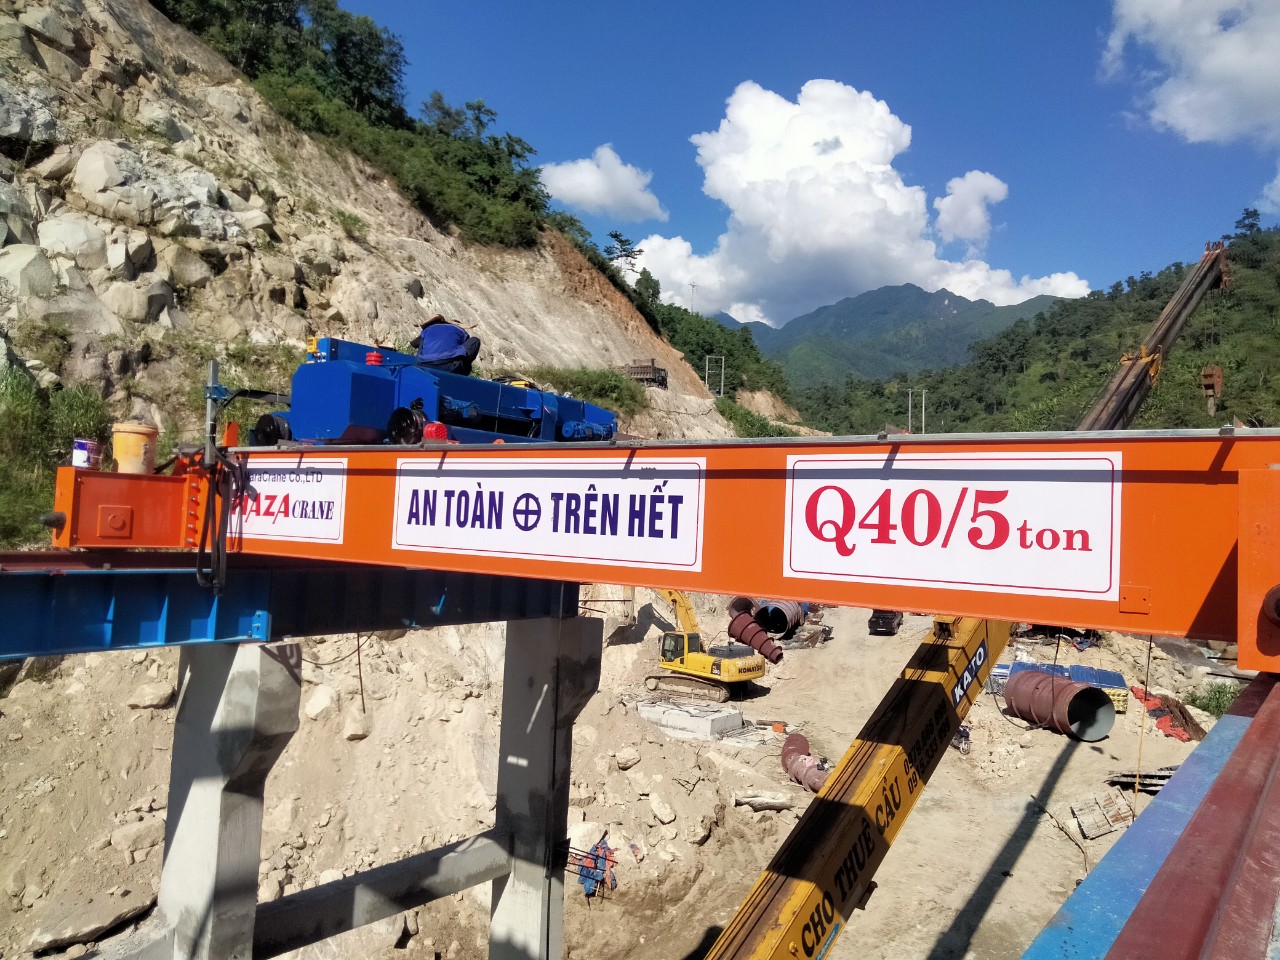 Cung cấp lắp đặt cầu trục gian máy 40/5 tấn cho nhà máy thủy điện Van Hồ Xã Nậm xe, Phong Thổ, Tỉnh Lai Châu